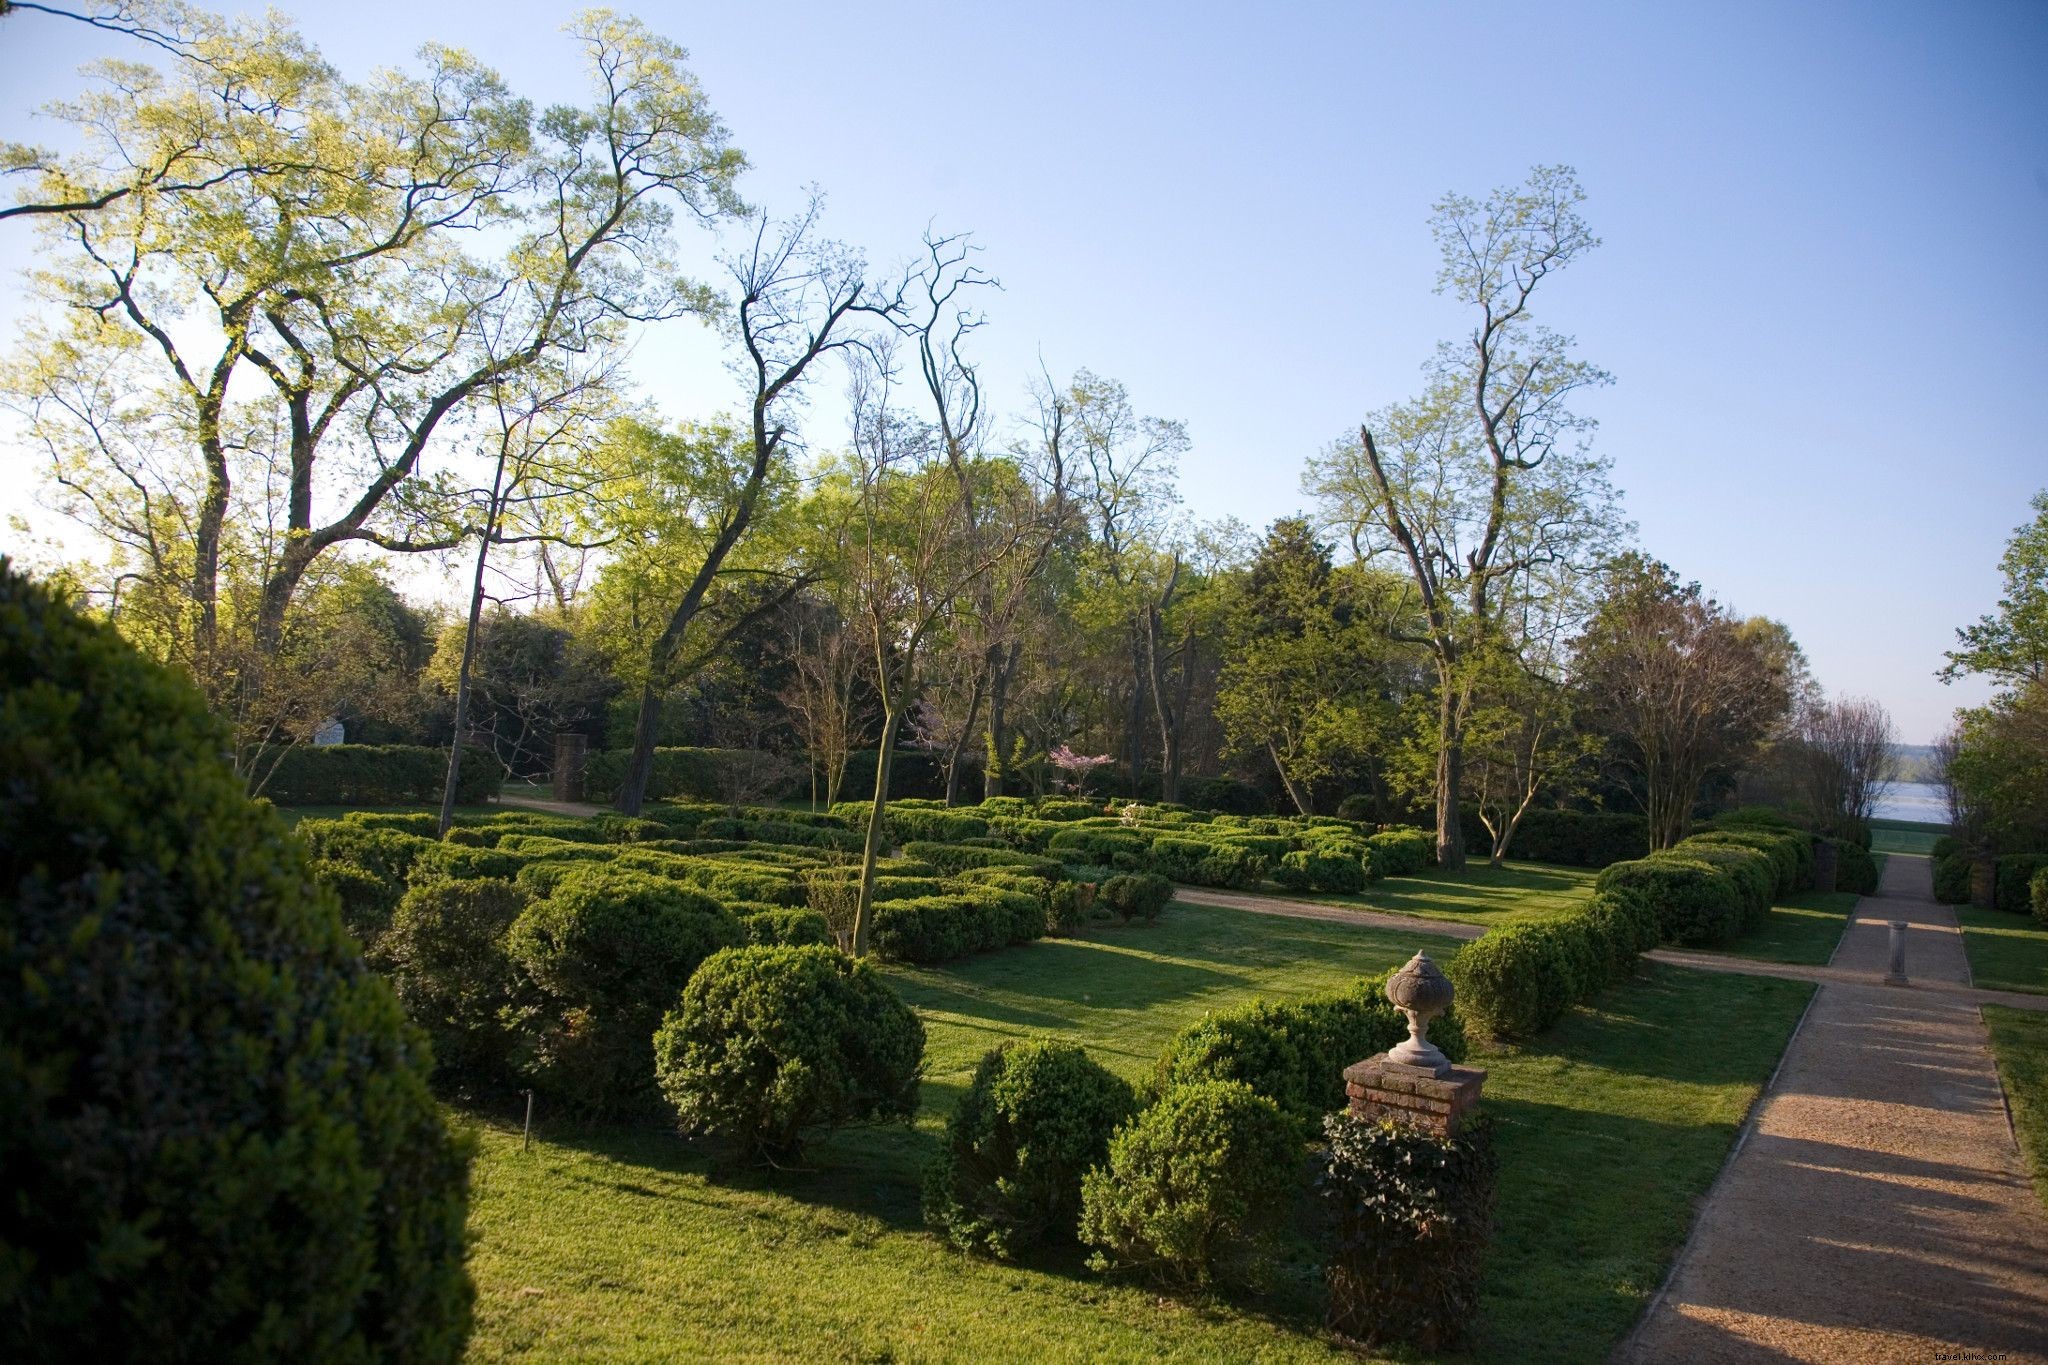 Semaine des jardins historiques 2021 :les plus beaux jardins de Virginie pour les fleurs de printemps 